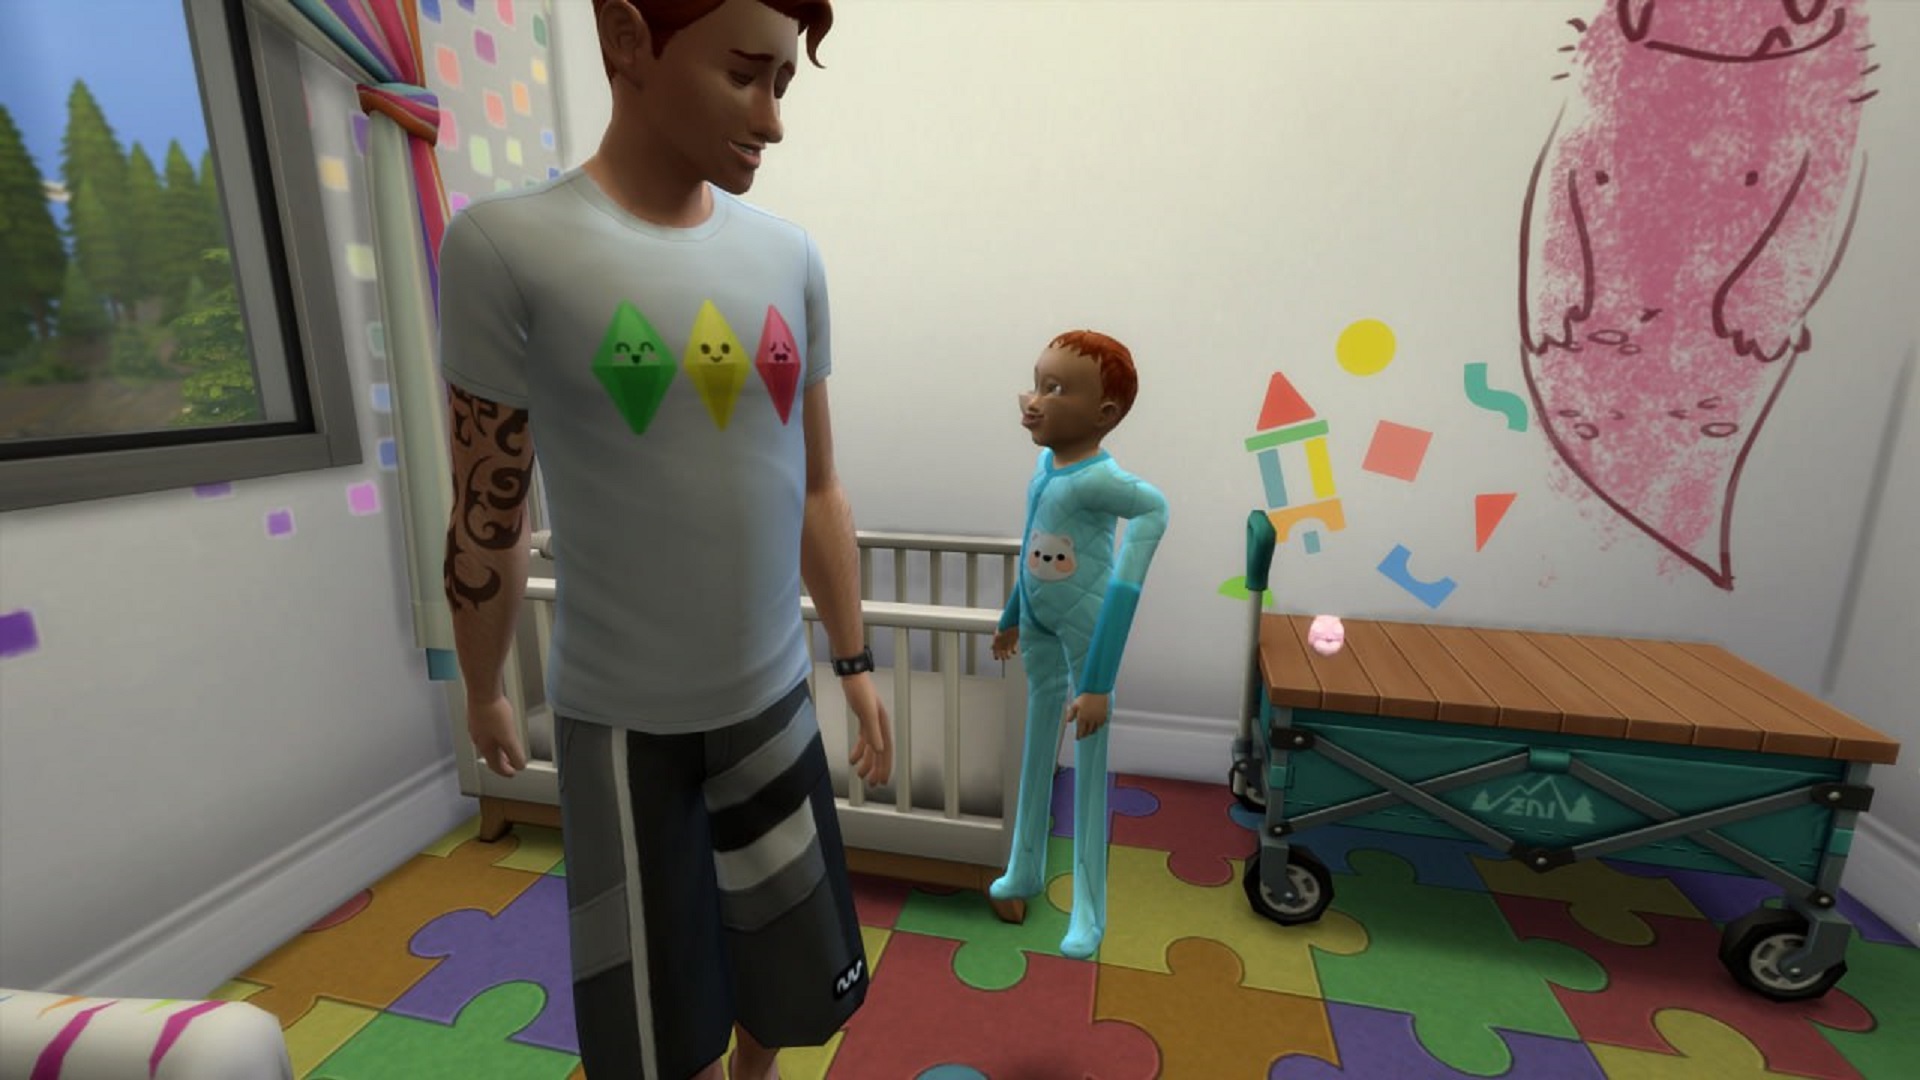 Некроморфы в The Sims 4 – обновление «Младенцы» наполнило игру багами с детьми